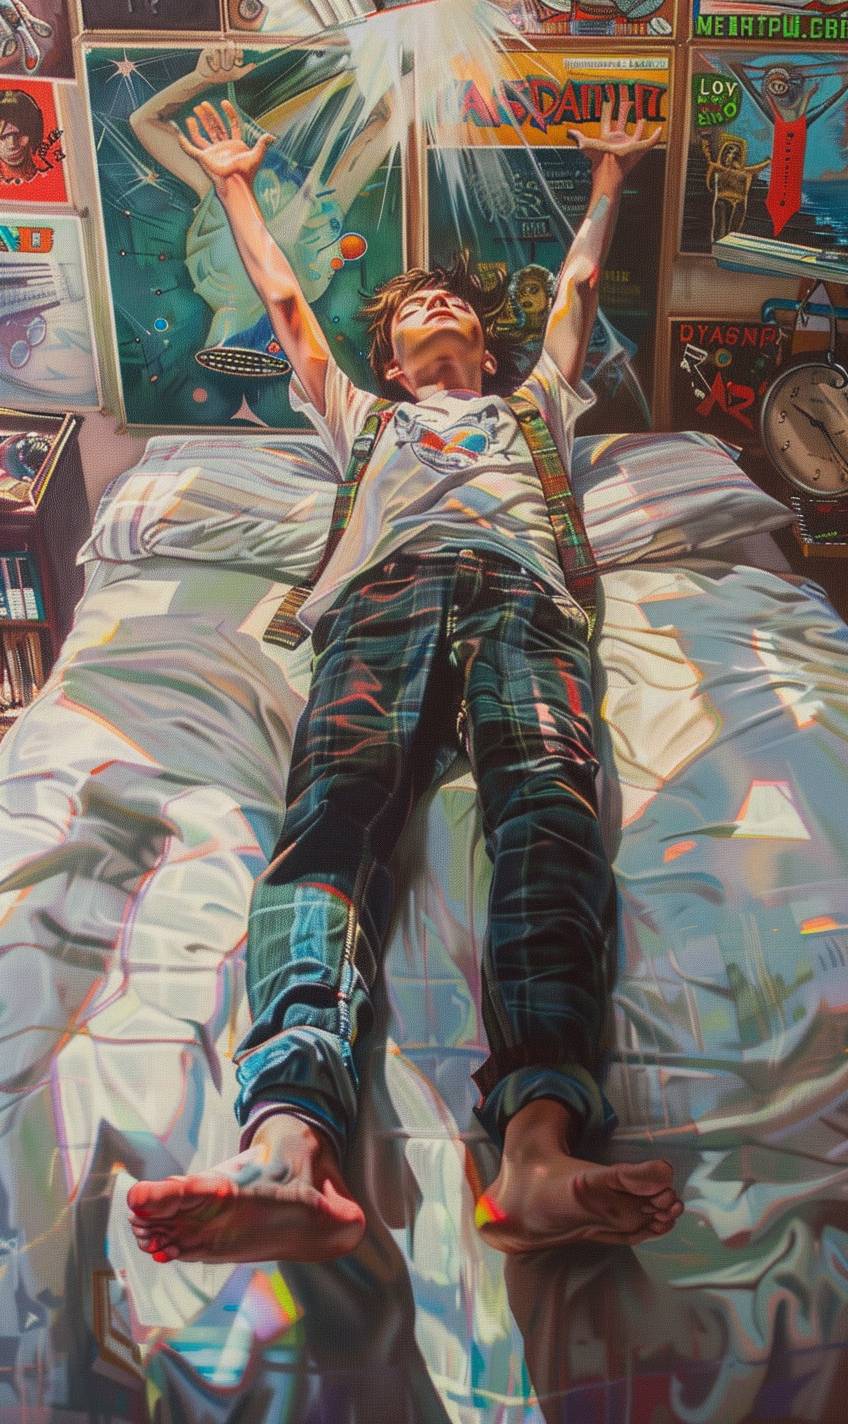 メキシコの16歳の少年がベッドに横たわって浮遊し、デヴィッド・ボウイやカイファンのロックポスターでいっぱいの部屋で幽体旅行をしています。彼の魂が身体を離れており、リアルな明るい光とパステルトーンのシーンです。--ar 3:5  --v 6.0